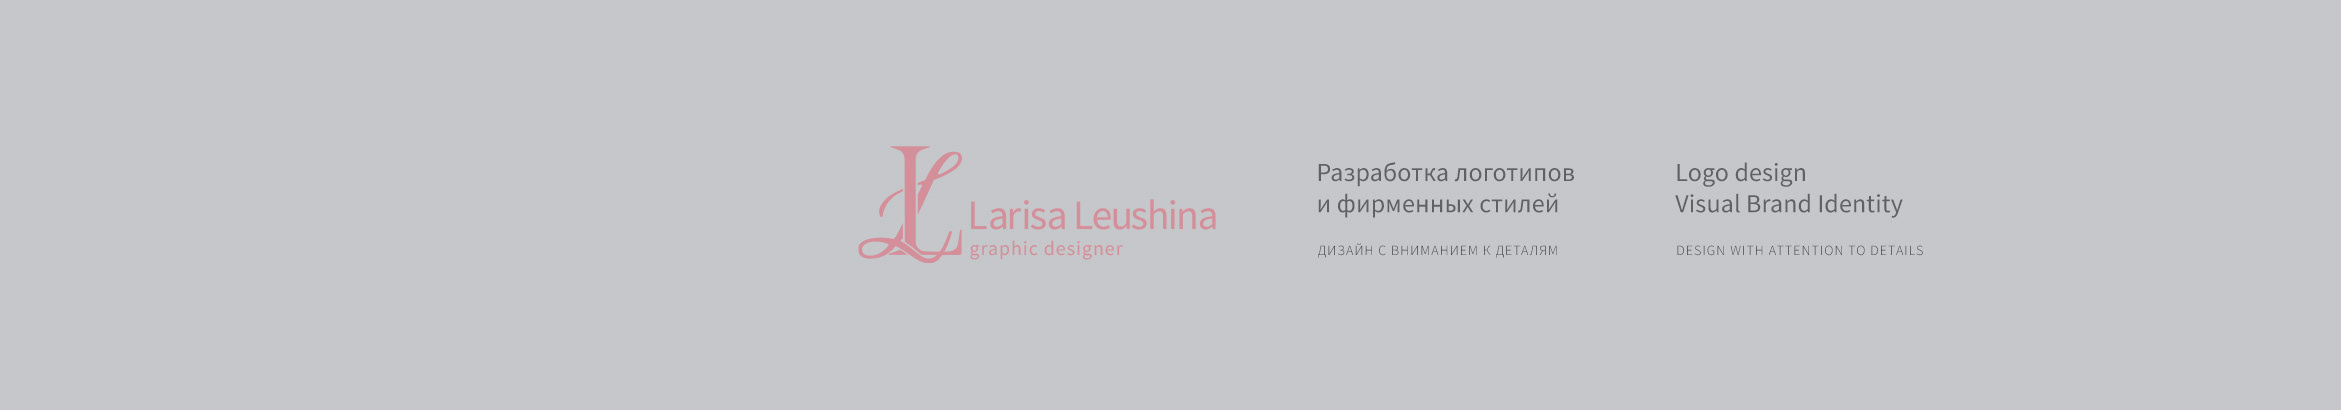 Larisa Leushina's profile banner